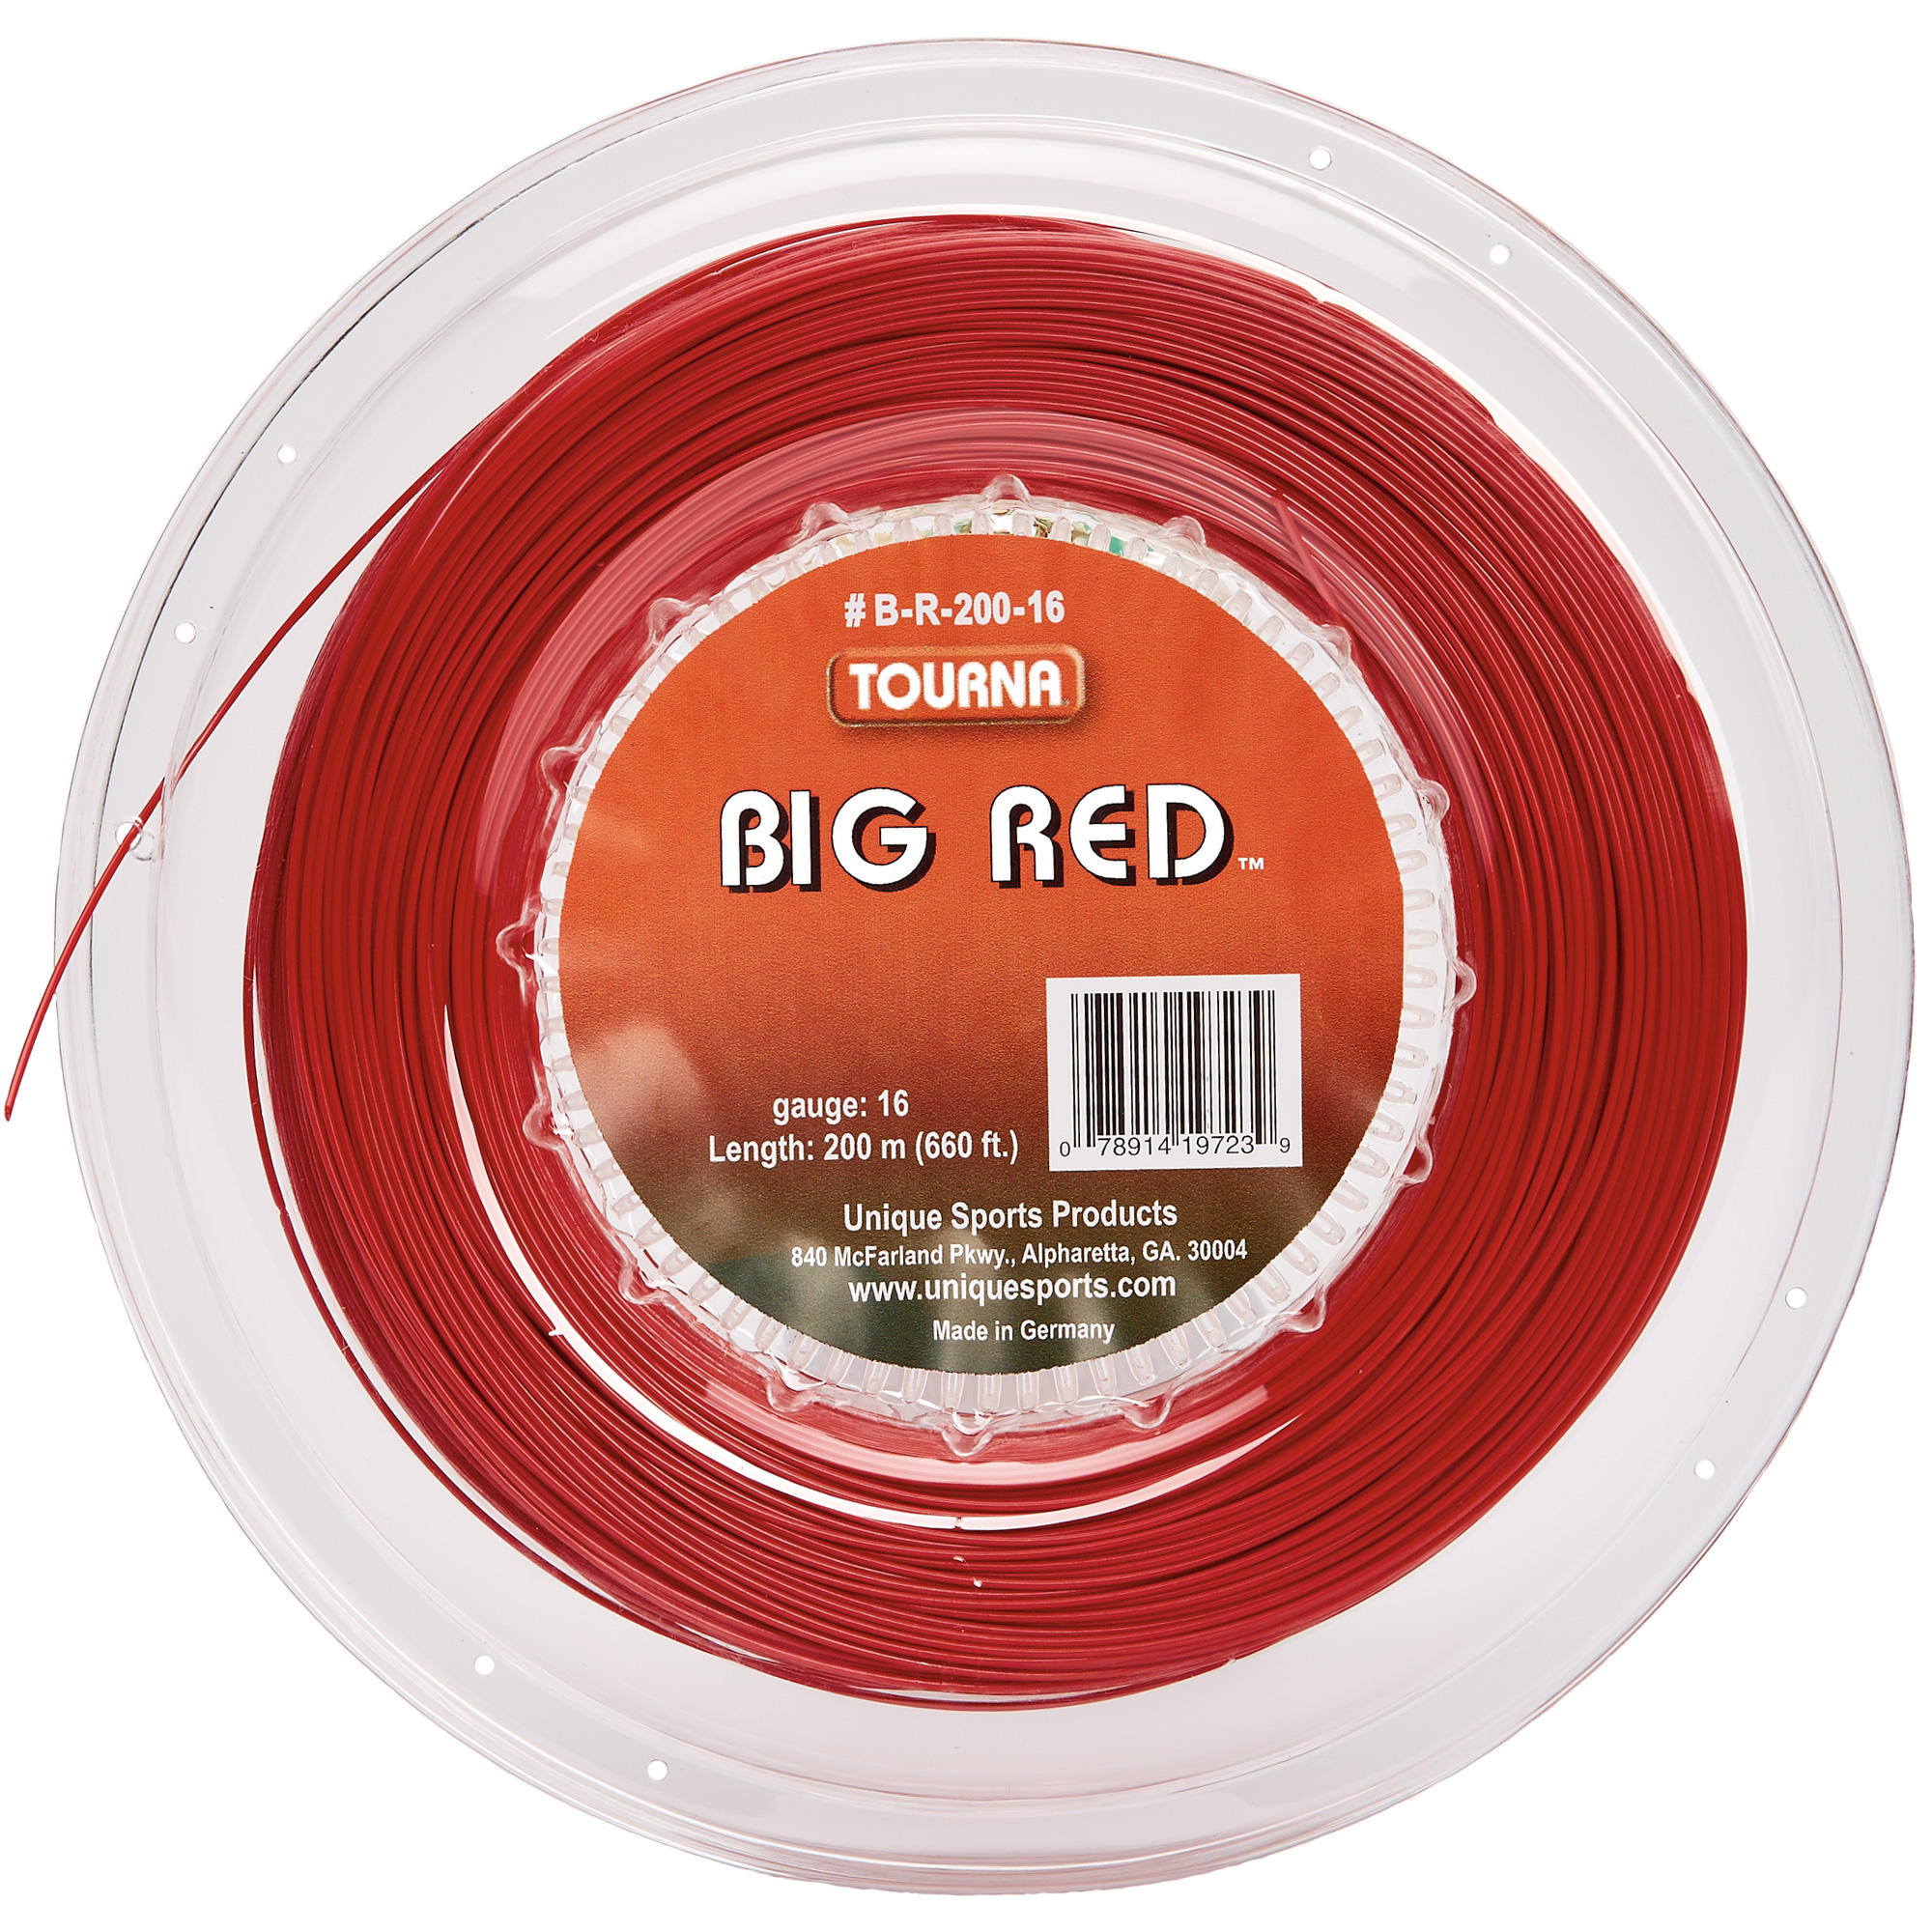 Tourna Big Red 16g Tennis String (Reel)